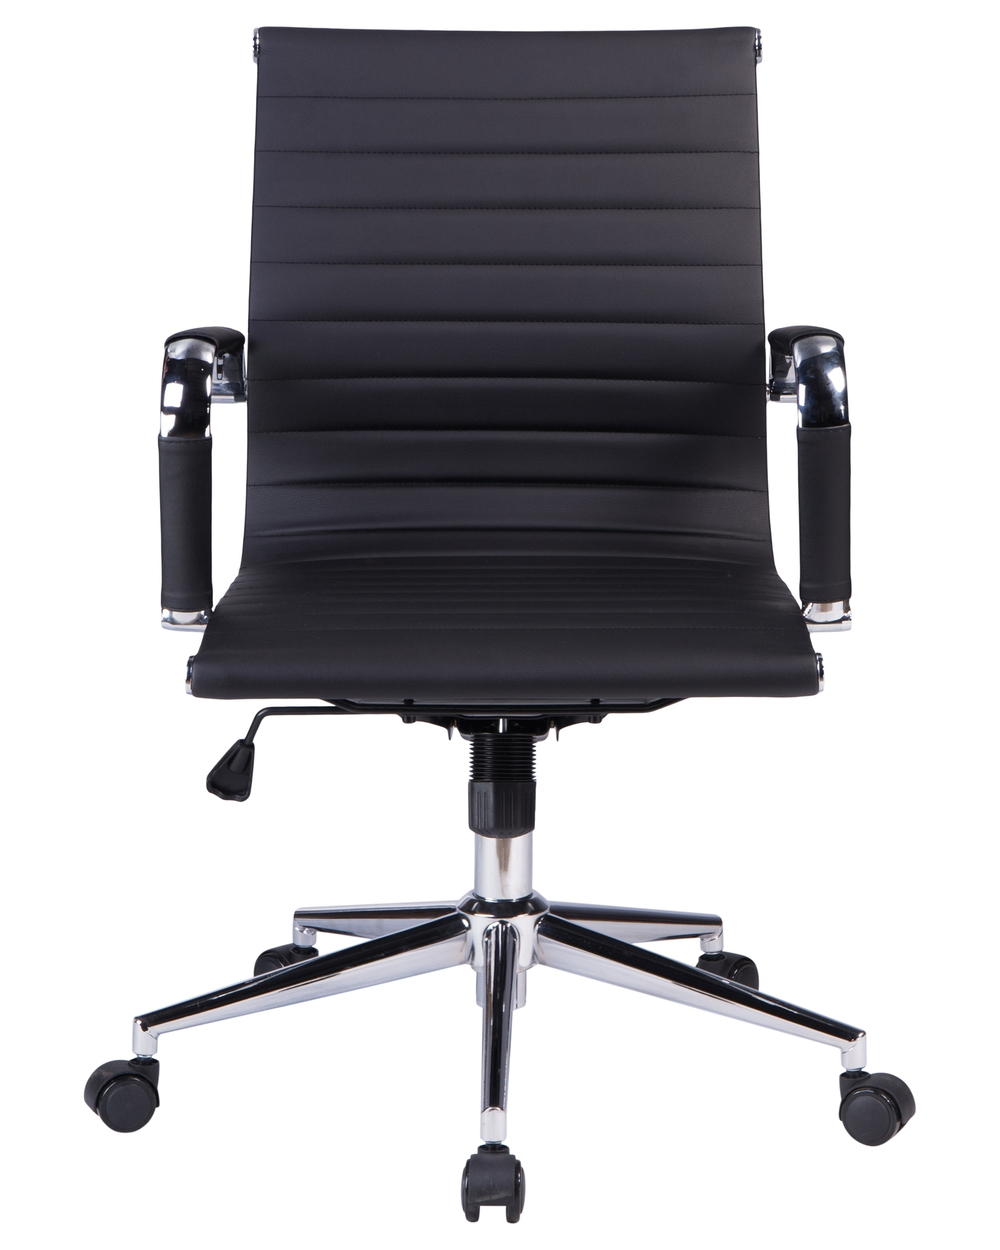 Офисное кресло для руководителей  CLAYTON (чёрный)